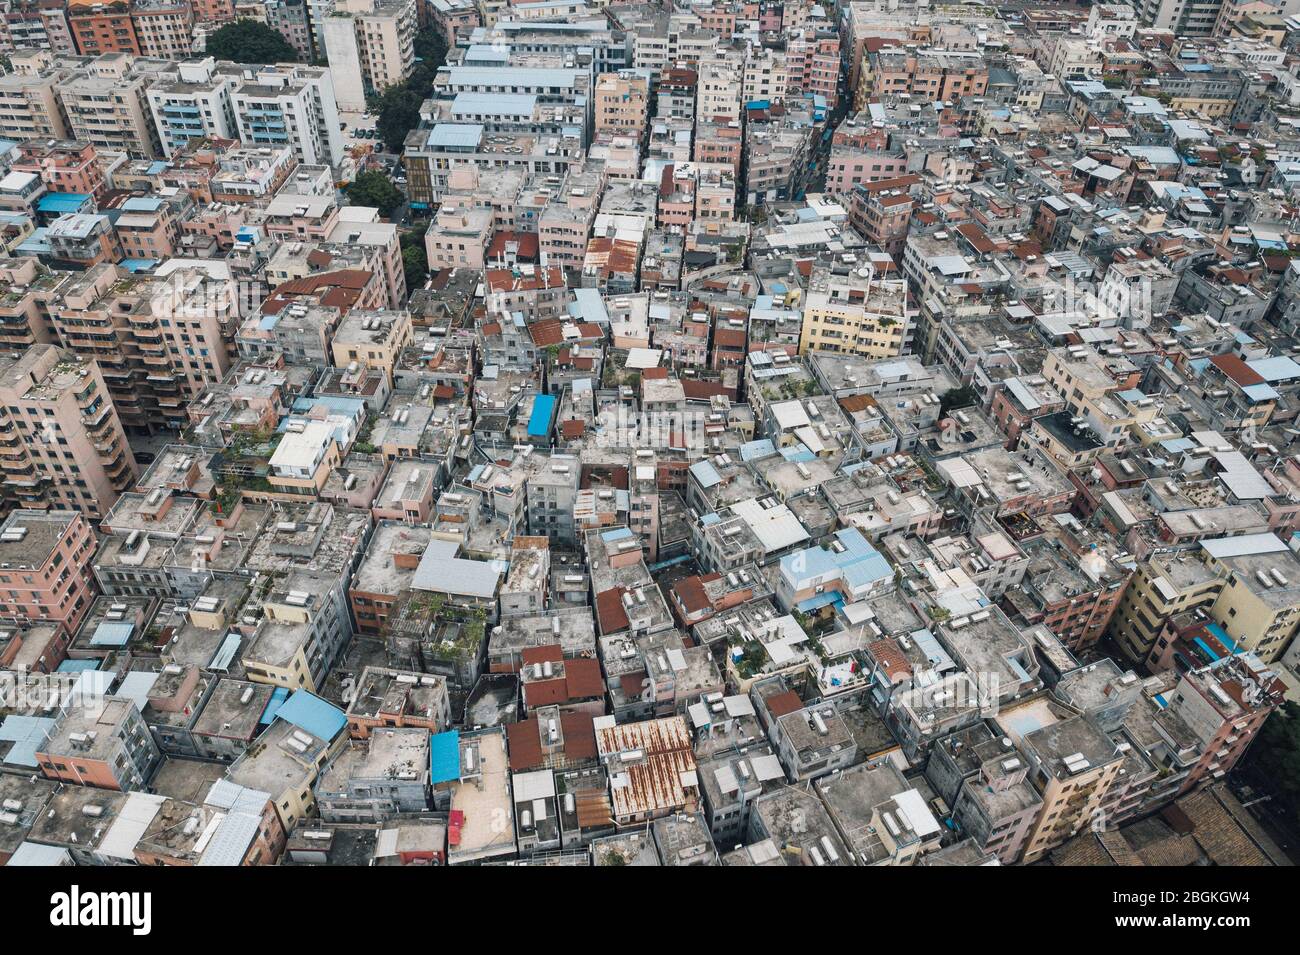 Una vista aerea di file di edifici residenti di varie altezze erigendo al centro della città, formando un mondo incompatibile con i cieli moderni circostanti Foto Stock